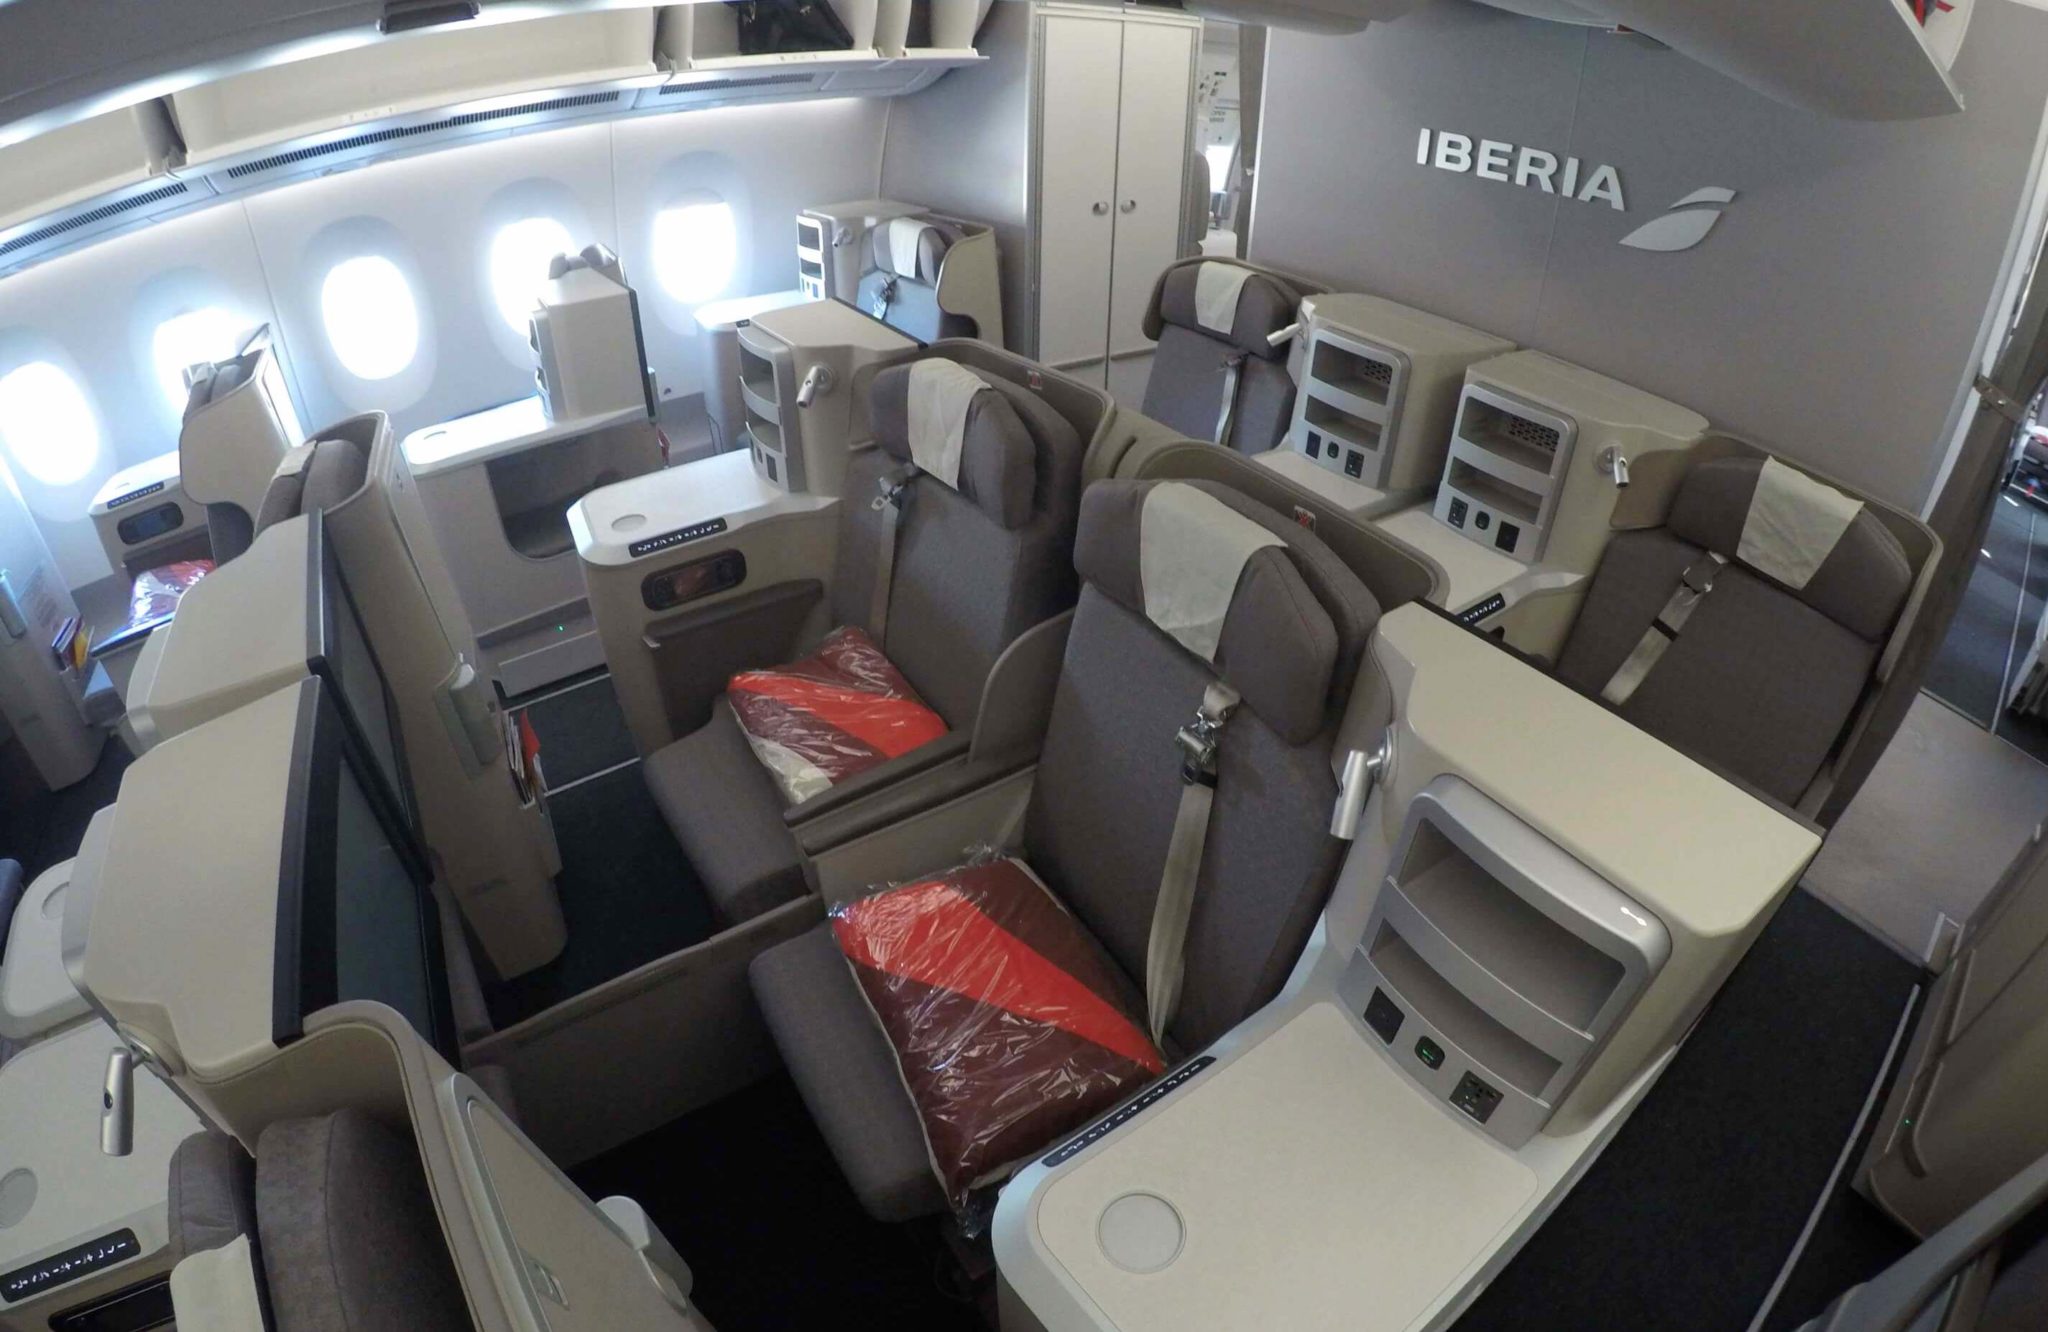 Cabina Business Class de Iberia A350